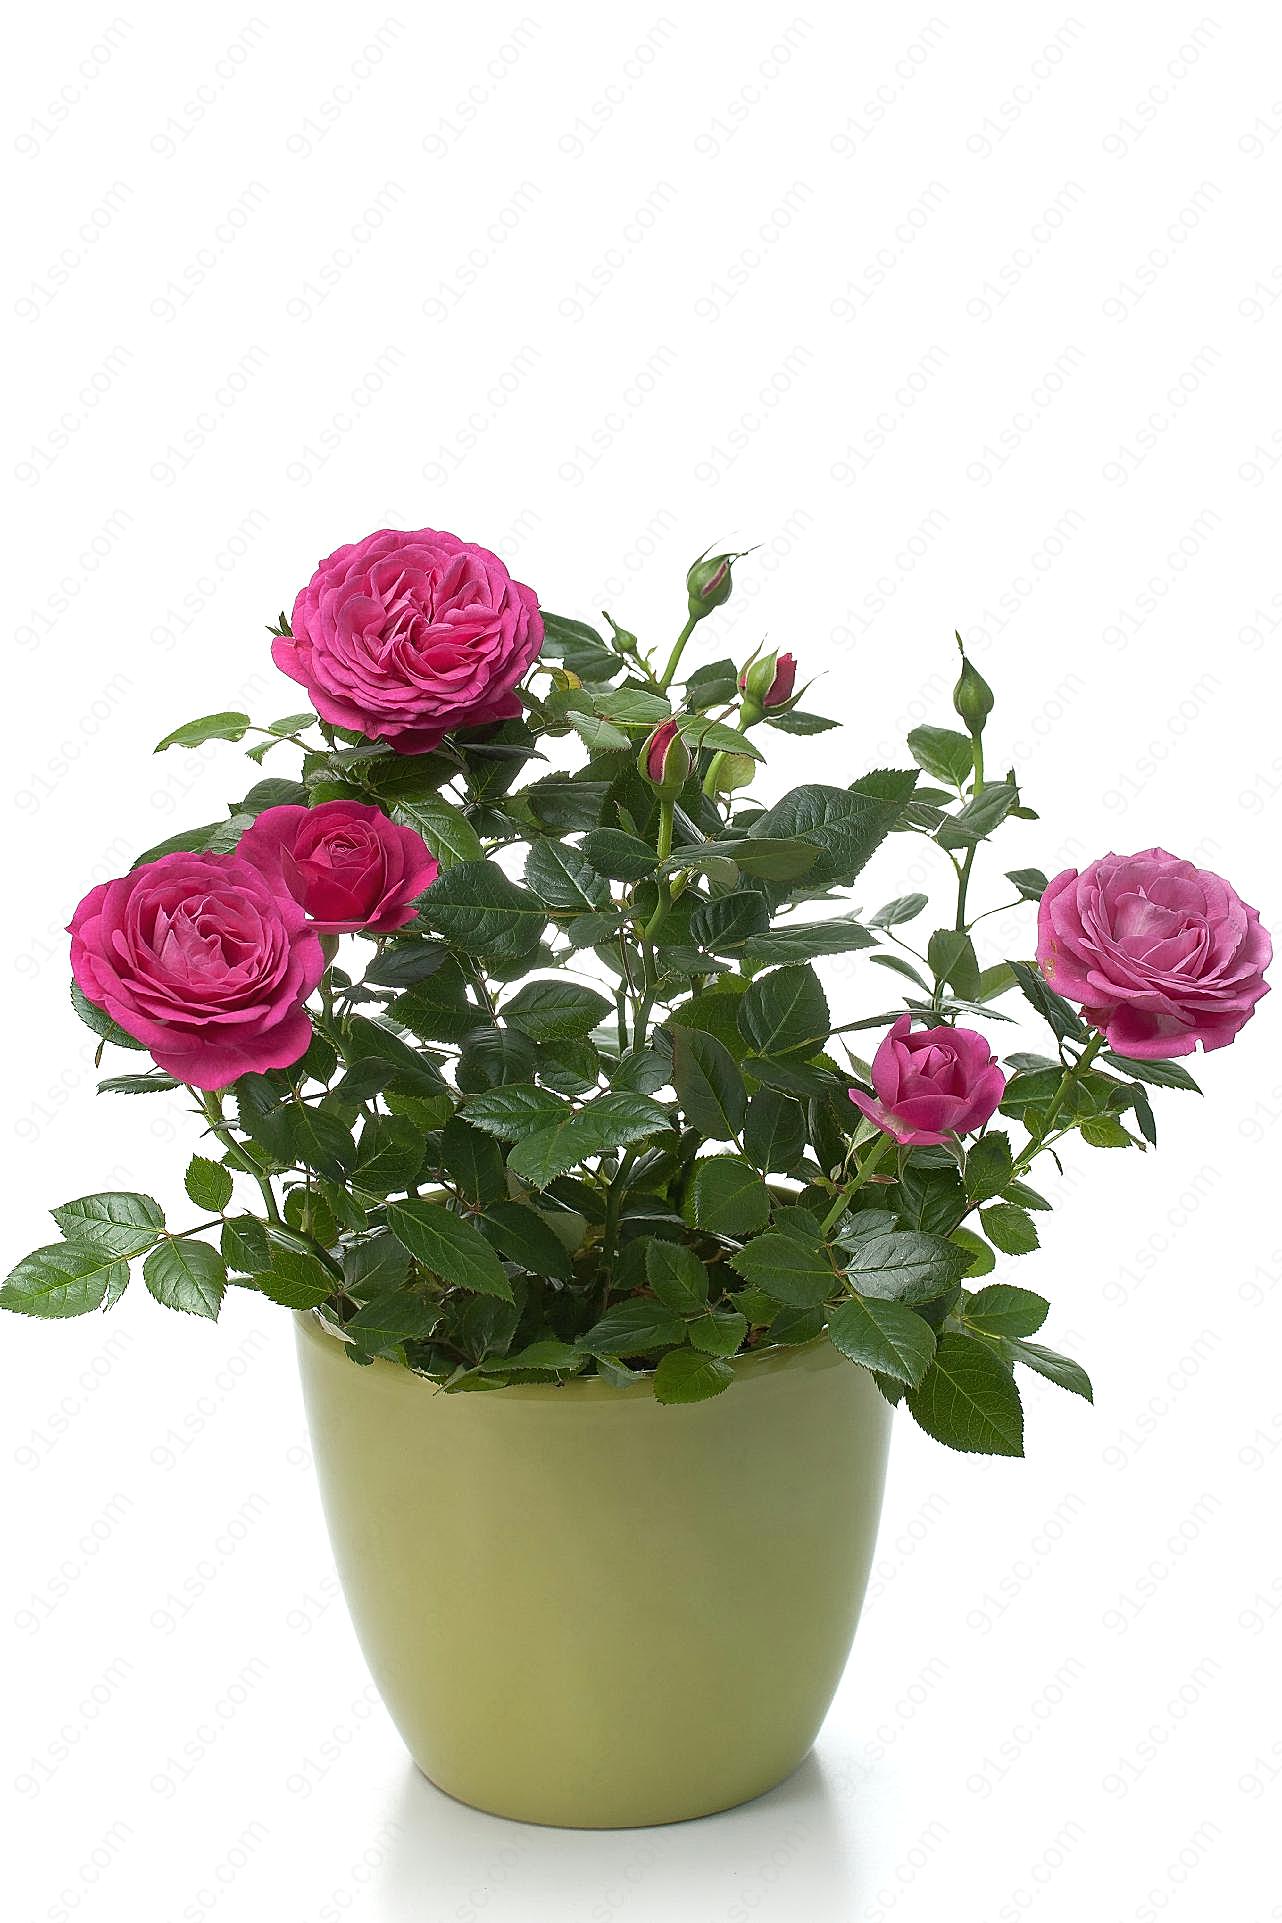 盆栽图片玫瑰花